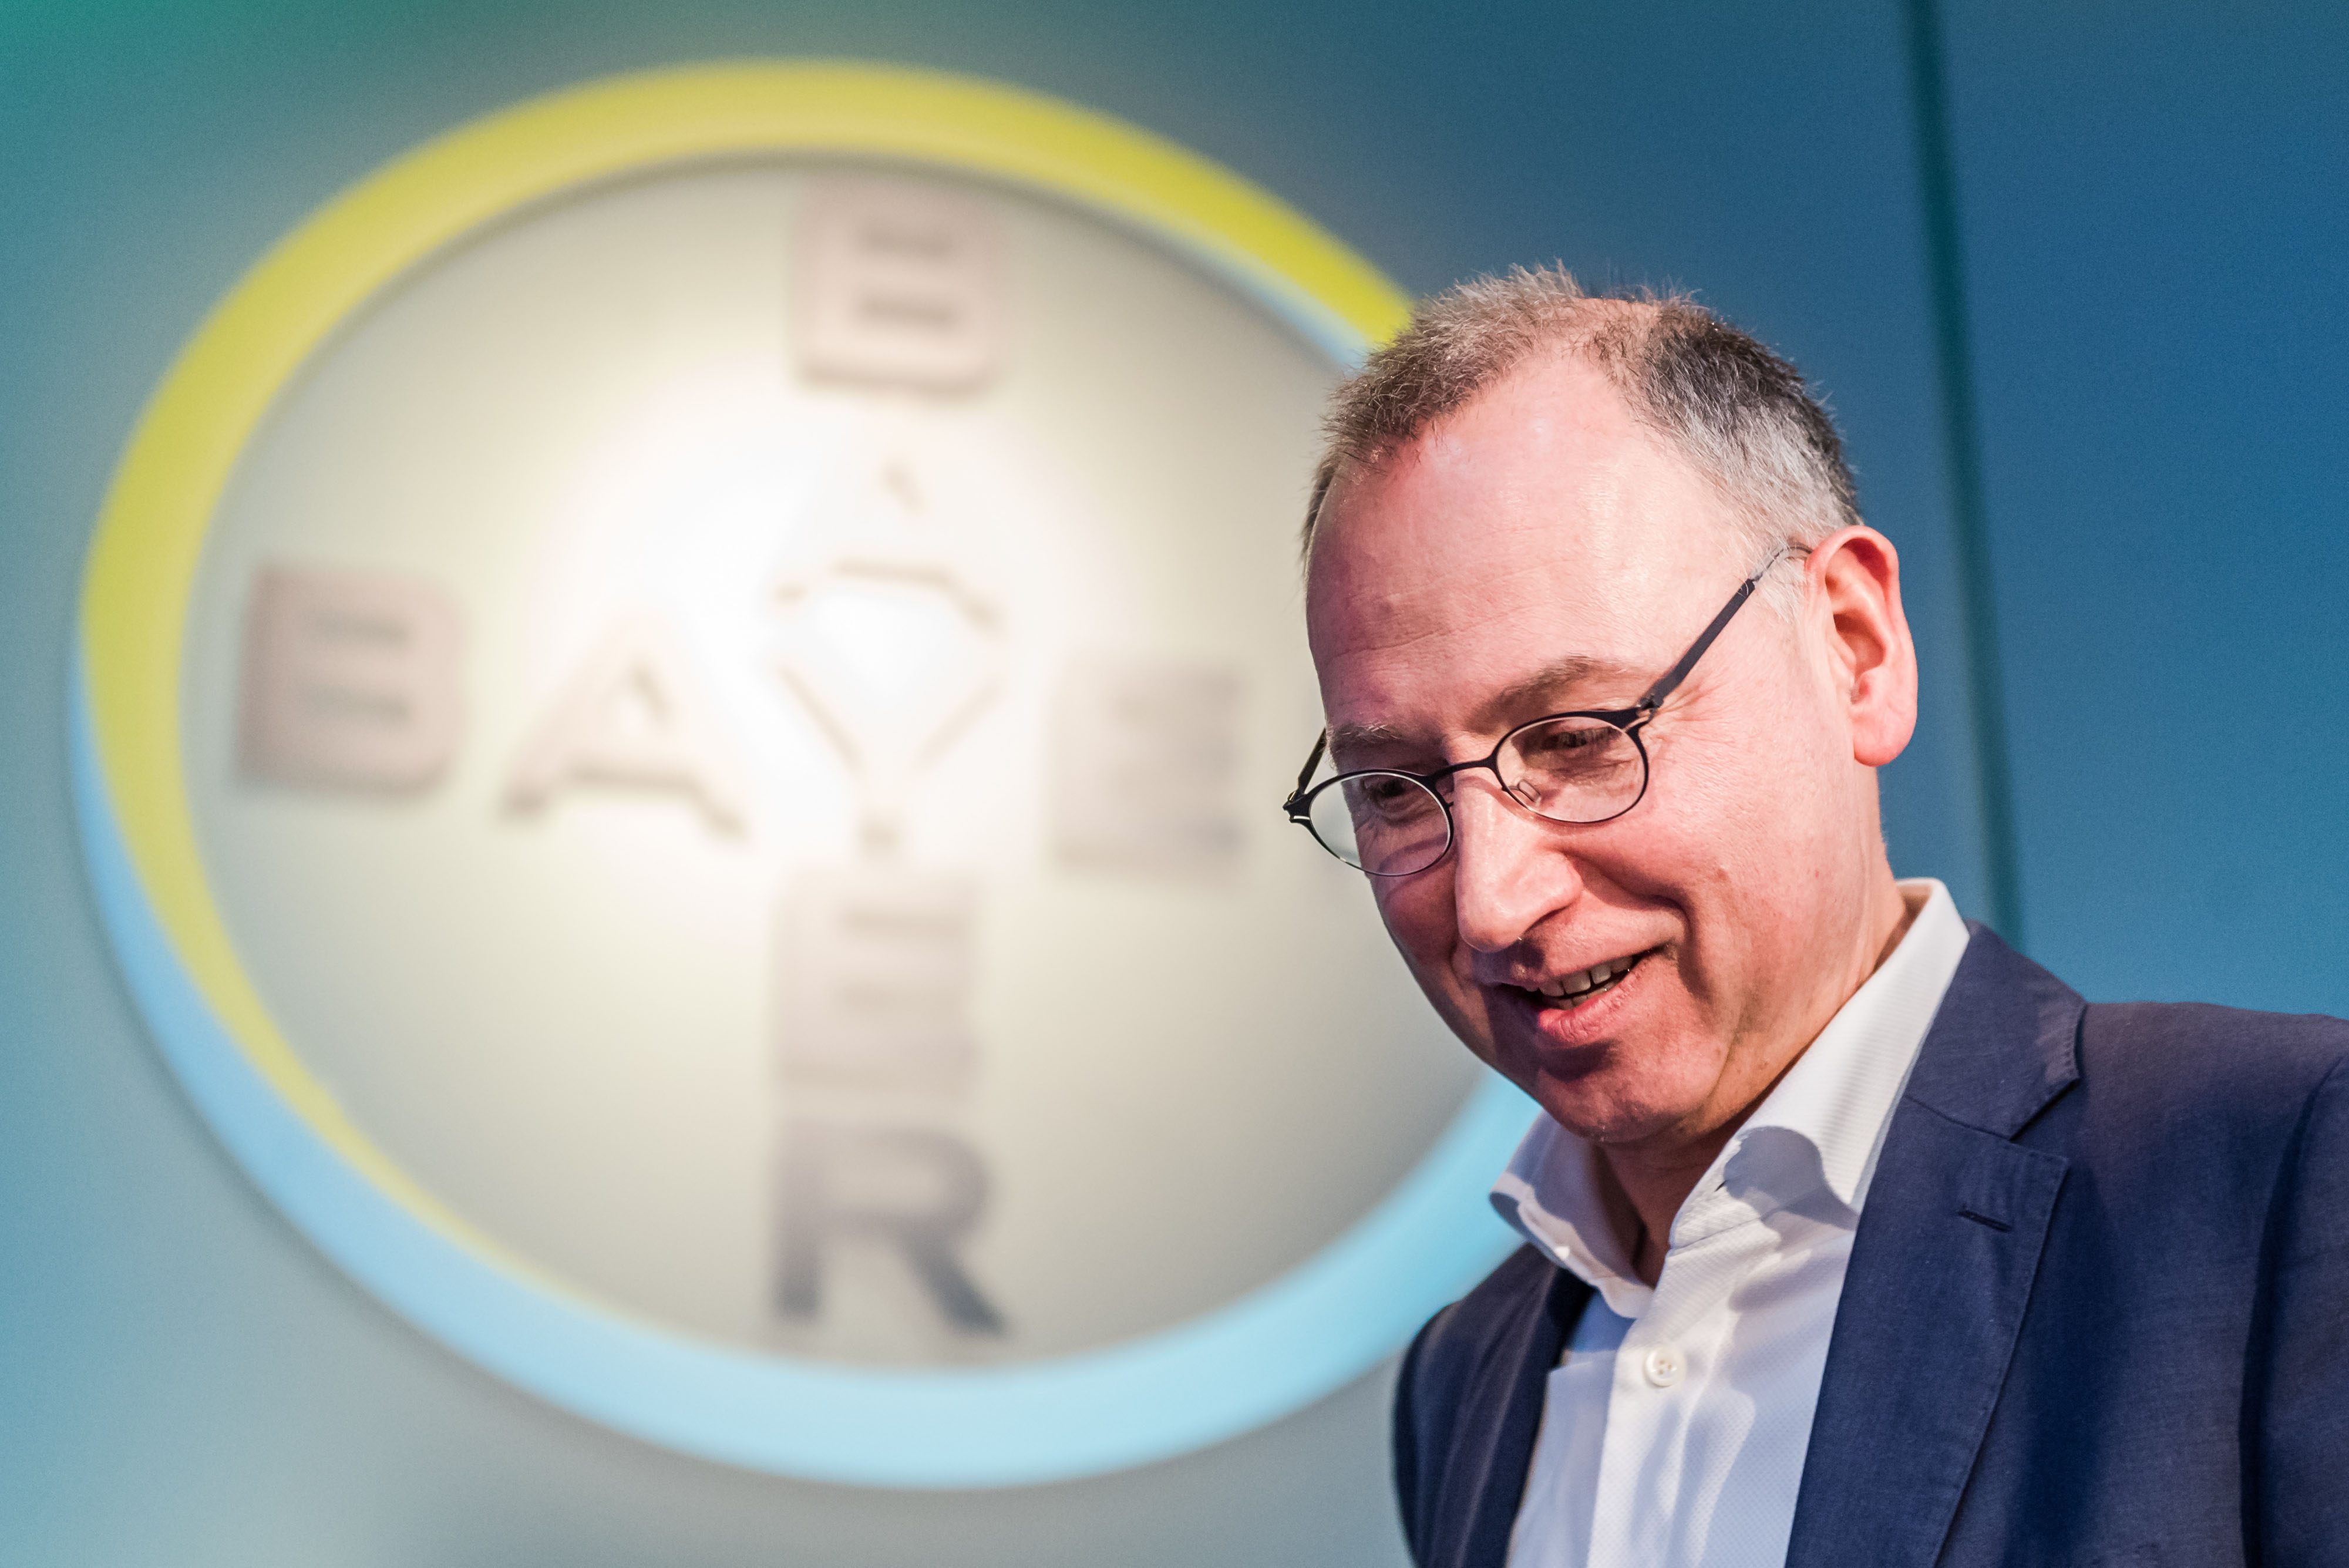 Bayer Hong Kong – About Us